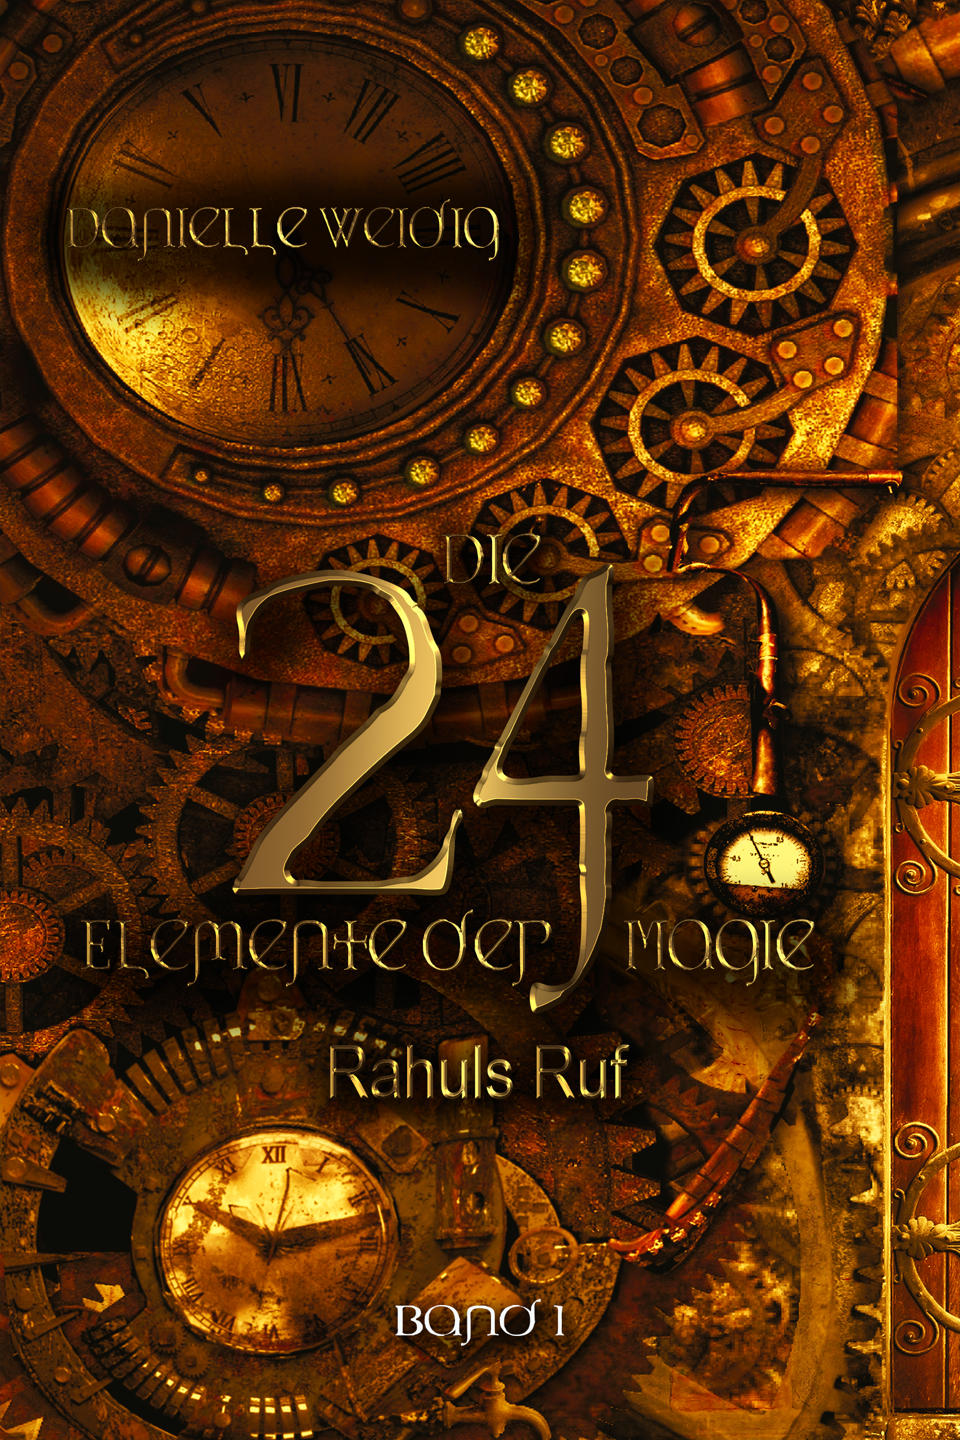 Cover zu „Die 24 Elemente der Magie, 1: Rahuls Ruf“ von Danielle Weidig